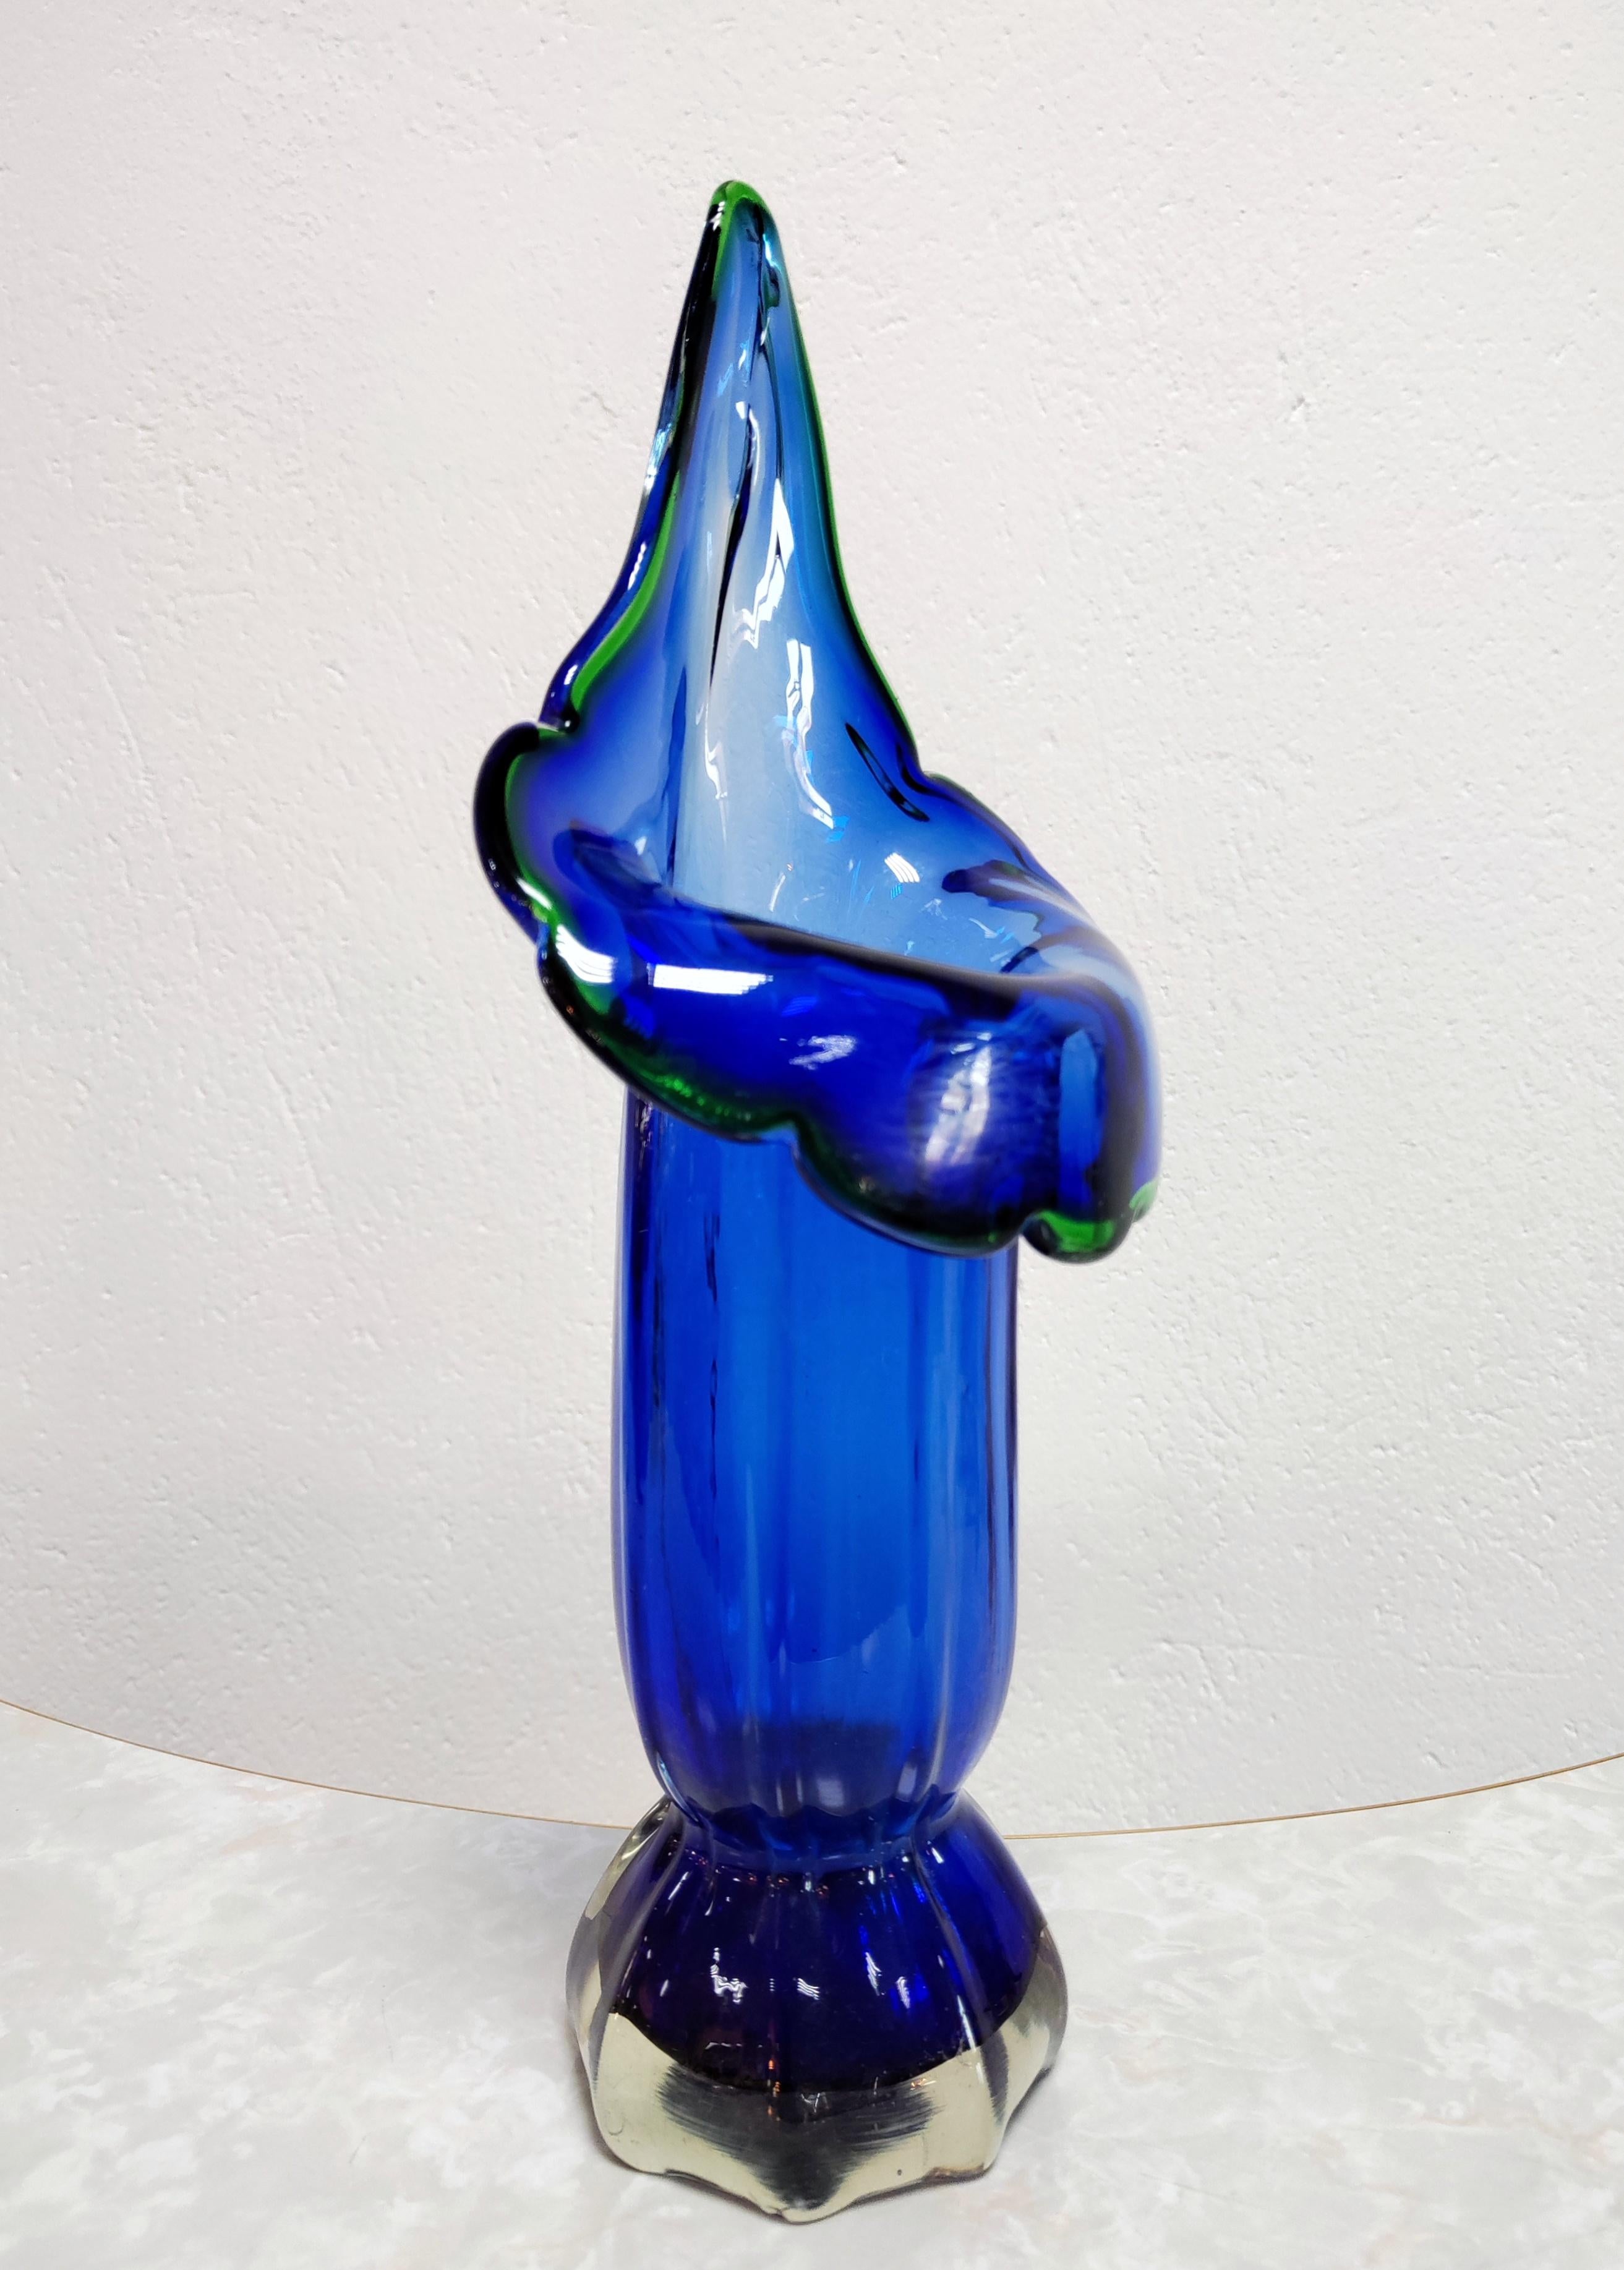 In dieser Auflistung finden Sie eine sehr seltene und atemberaubende, große mundgeblasene Murano-Glas-Vase in kobaltblauem, dickem Glas, mit dem grünen Rand um die Blüte, geformt als Calla Lily. Die elegante Form und die leuchtende Farbe machen ihn